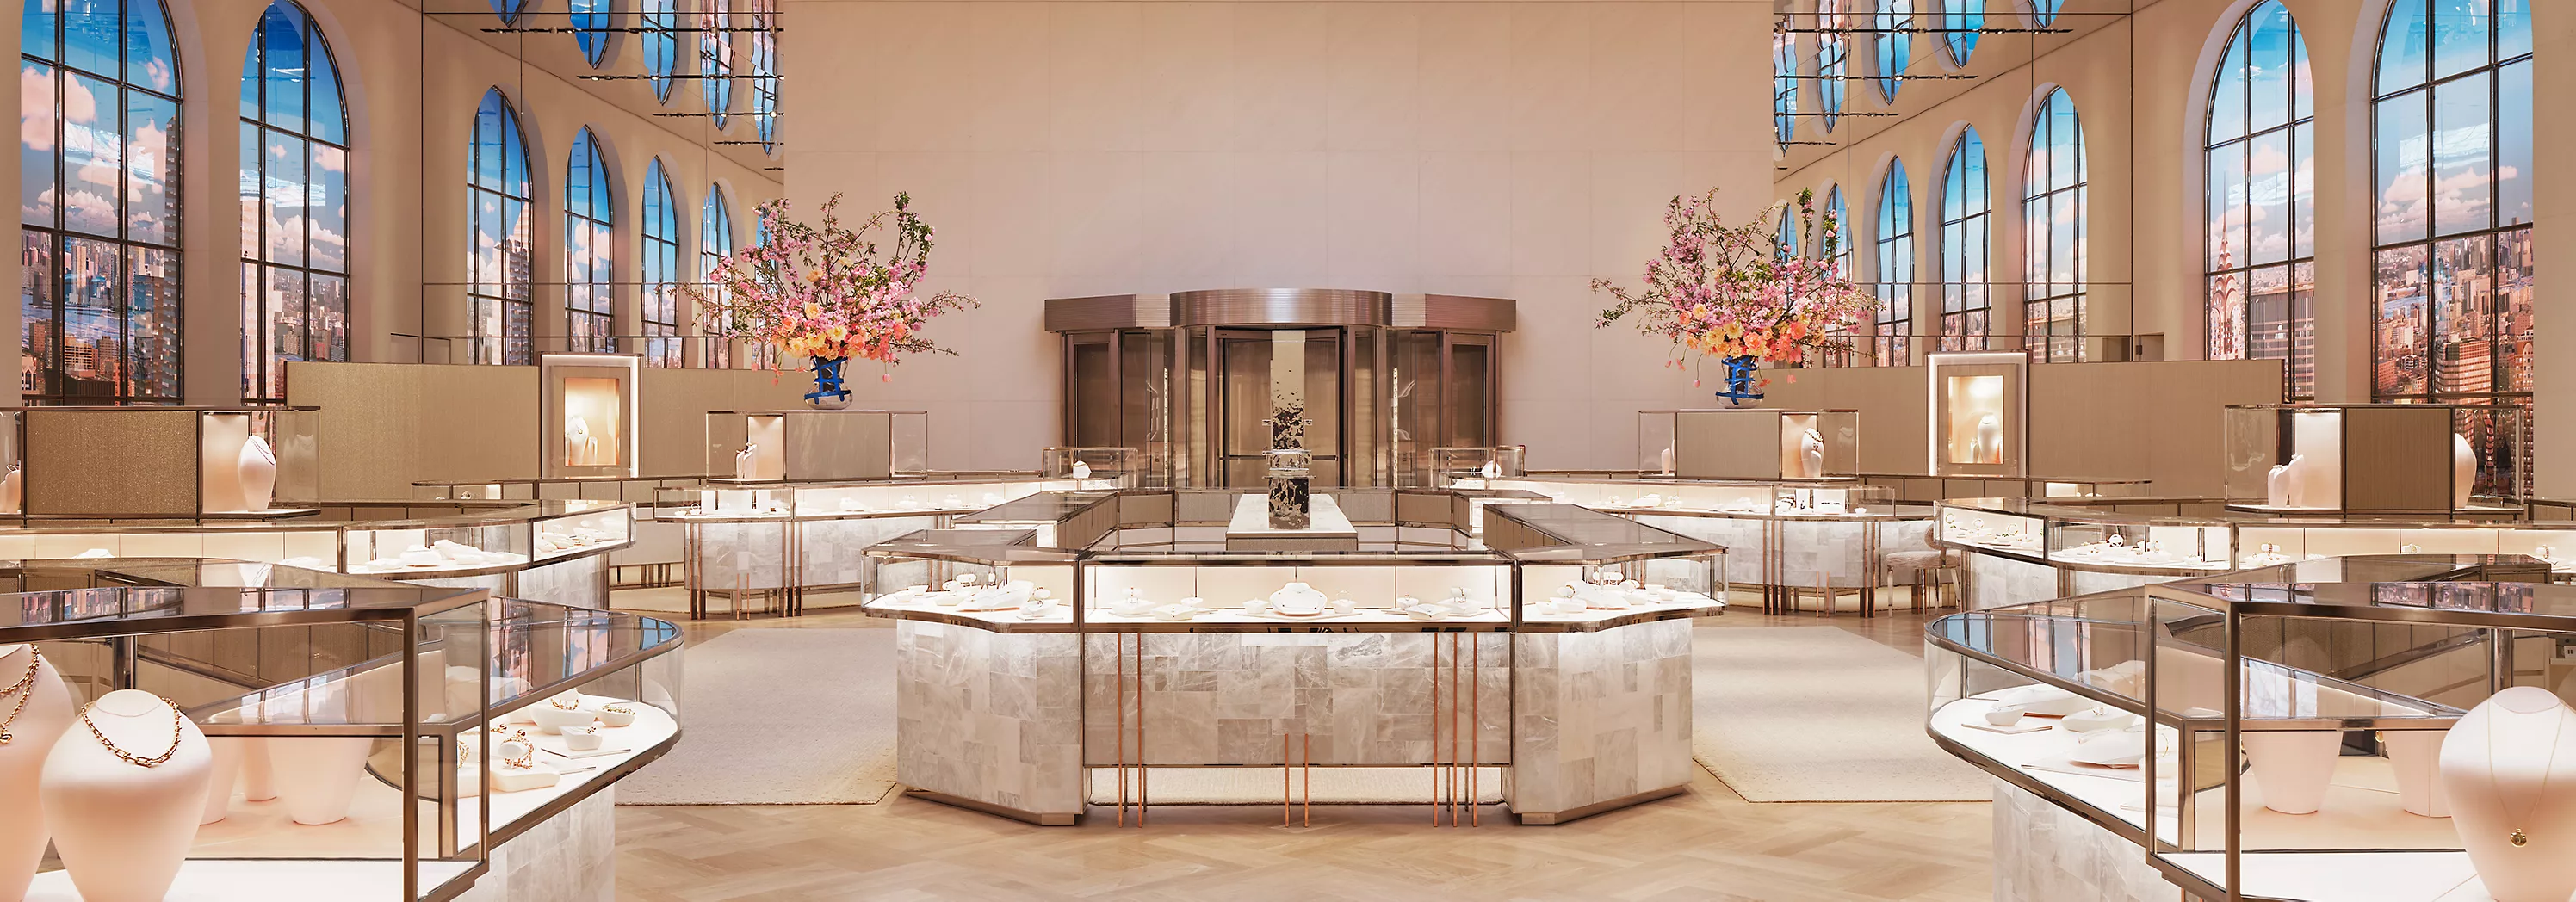 【#Jewelry】】Tiffany & Co. 成為第一家自訂淨零排放目標獲科學基礎減量目標倡議組織認可的奢華珠寶品牌